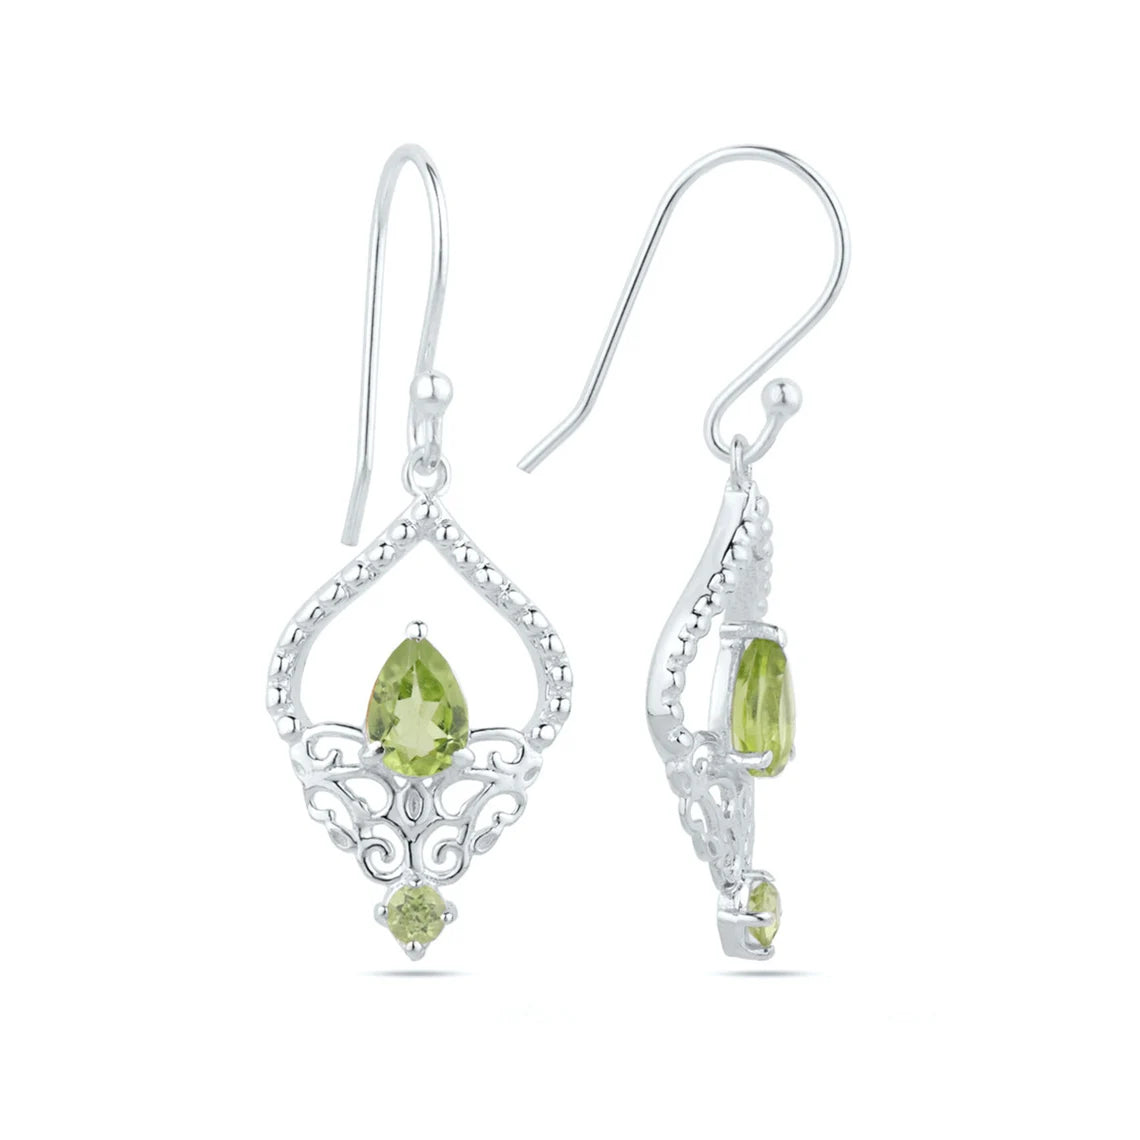 Natural Peridot Earrings Green Peridot Silver Earrings 925 Sterling Silver Peridot Earrings Gift for her